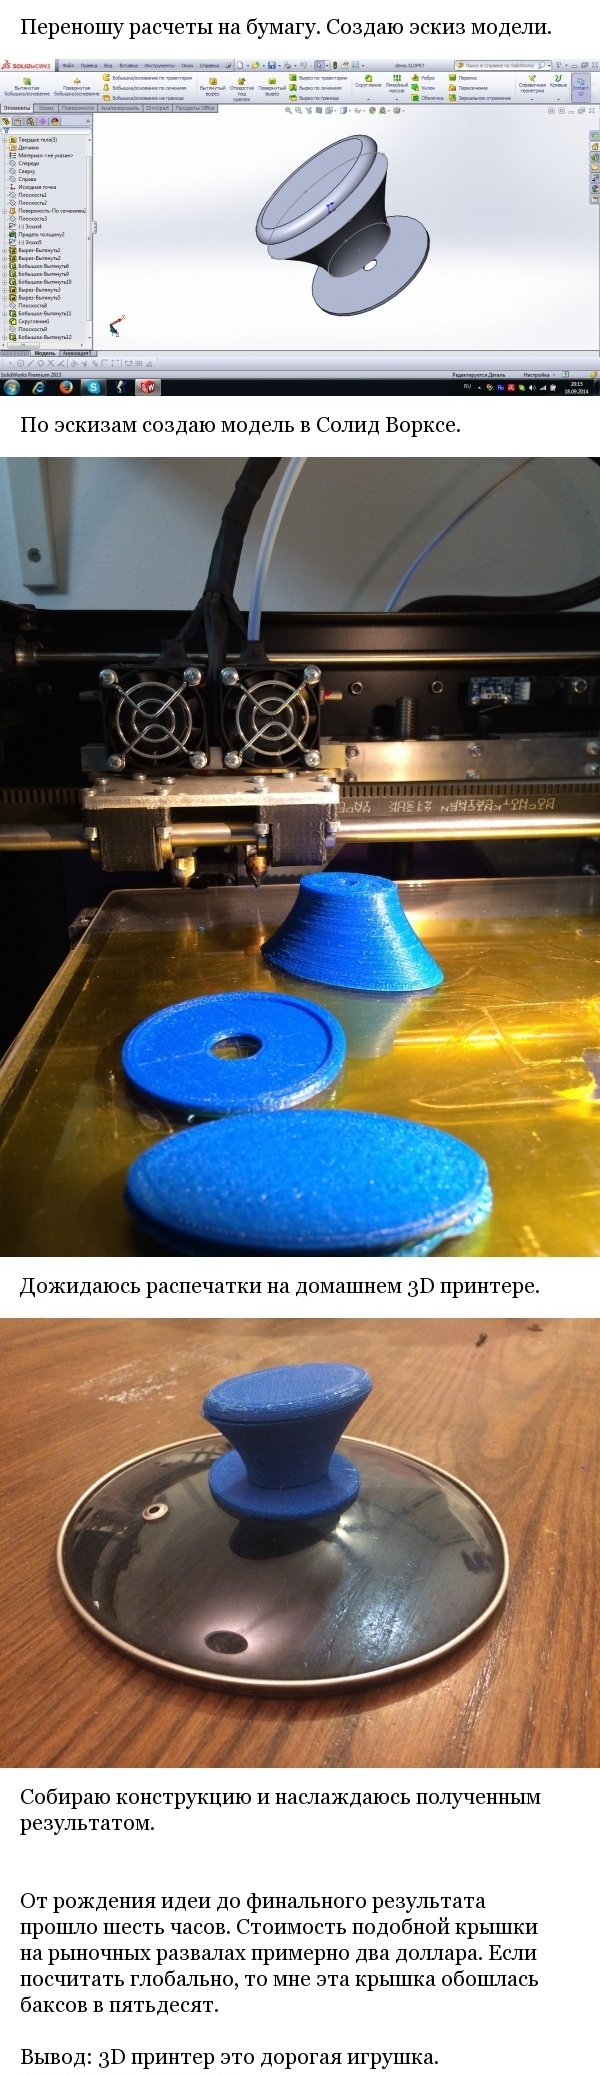 Использование 3D принтера в домашних условиях